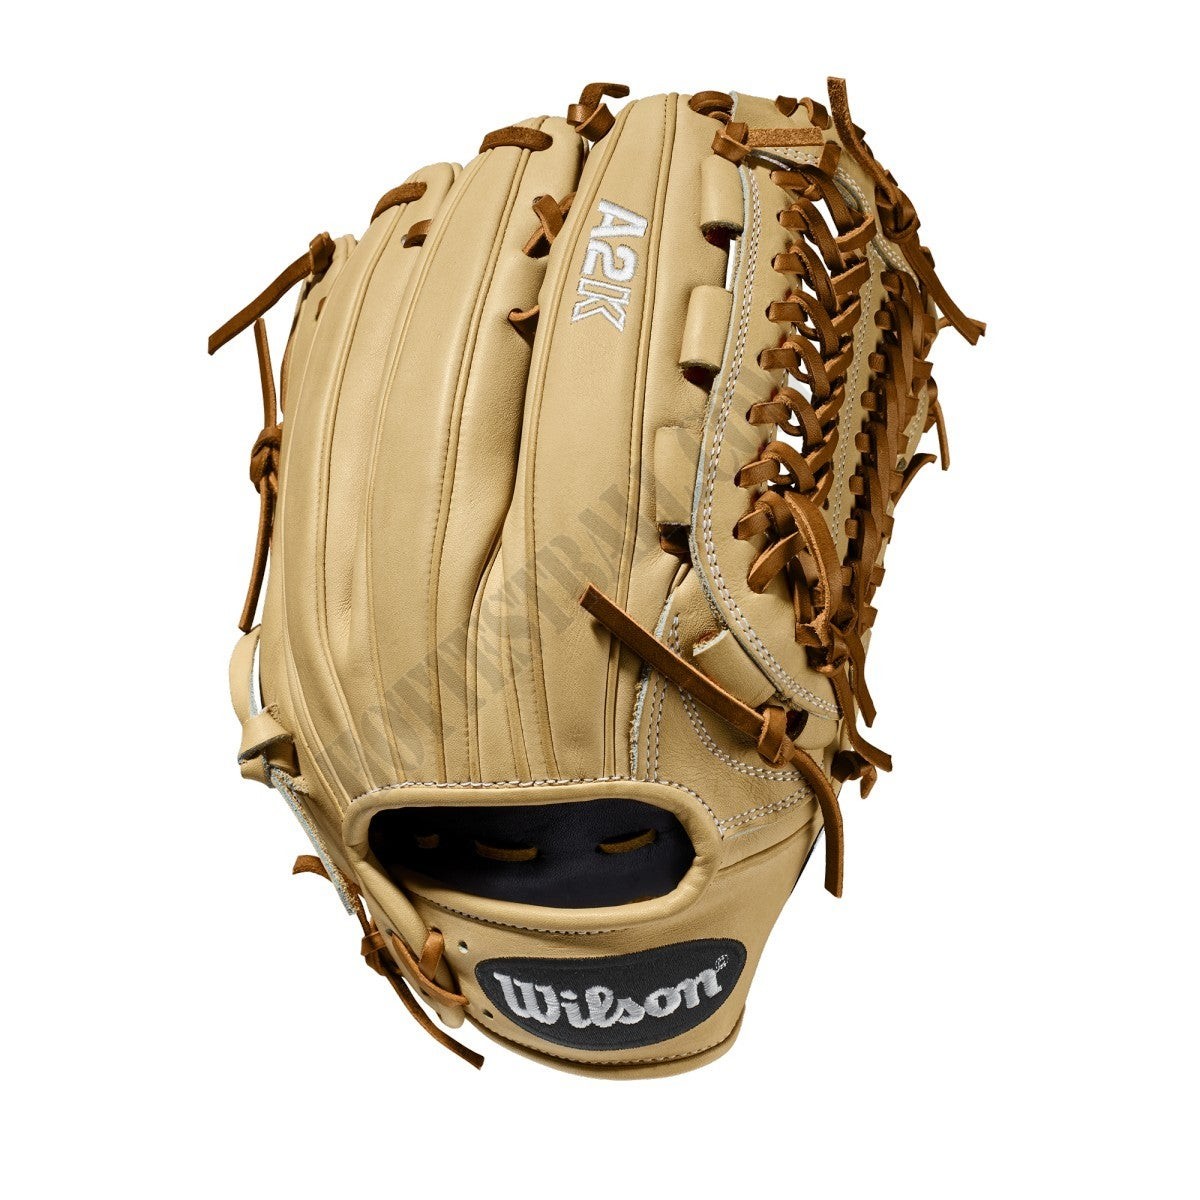 2020 A2K D33 11.75" Pitcher's Baseball Glove ● Wilson Promotions - -1